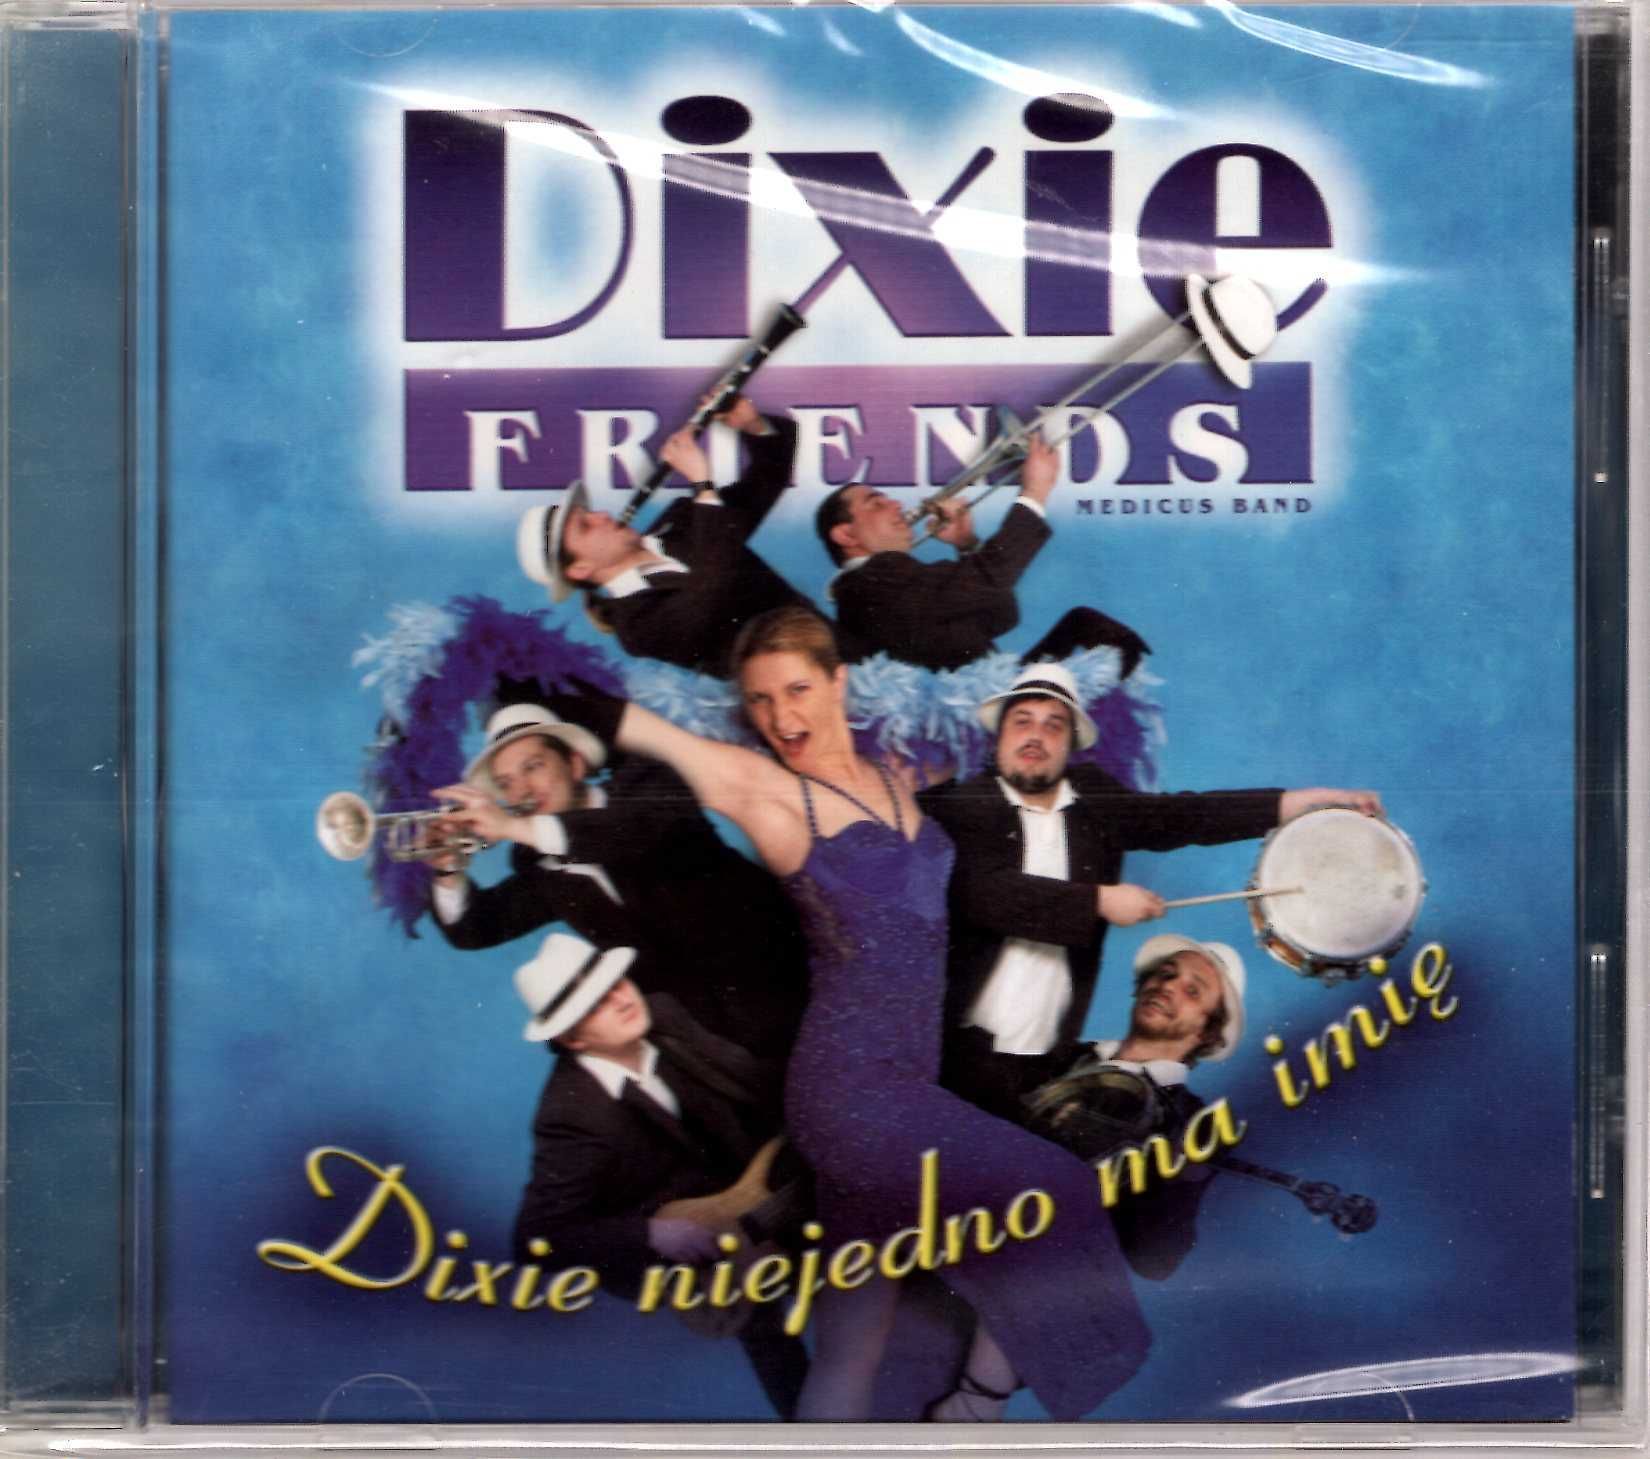 Dixie Friends - Dixie niejedno ma imię (CD)